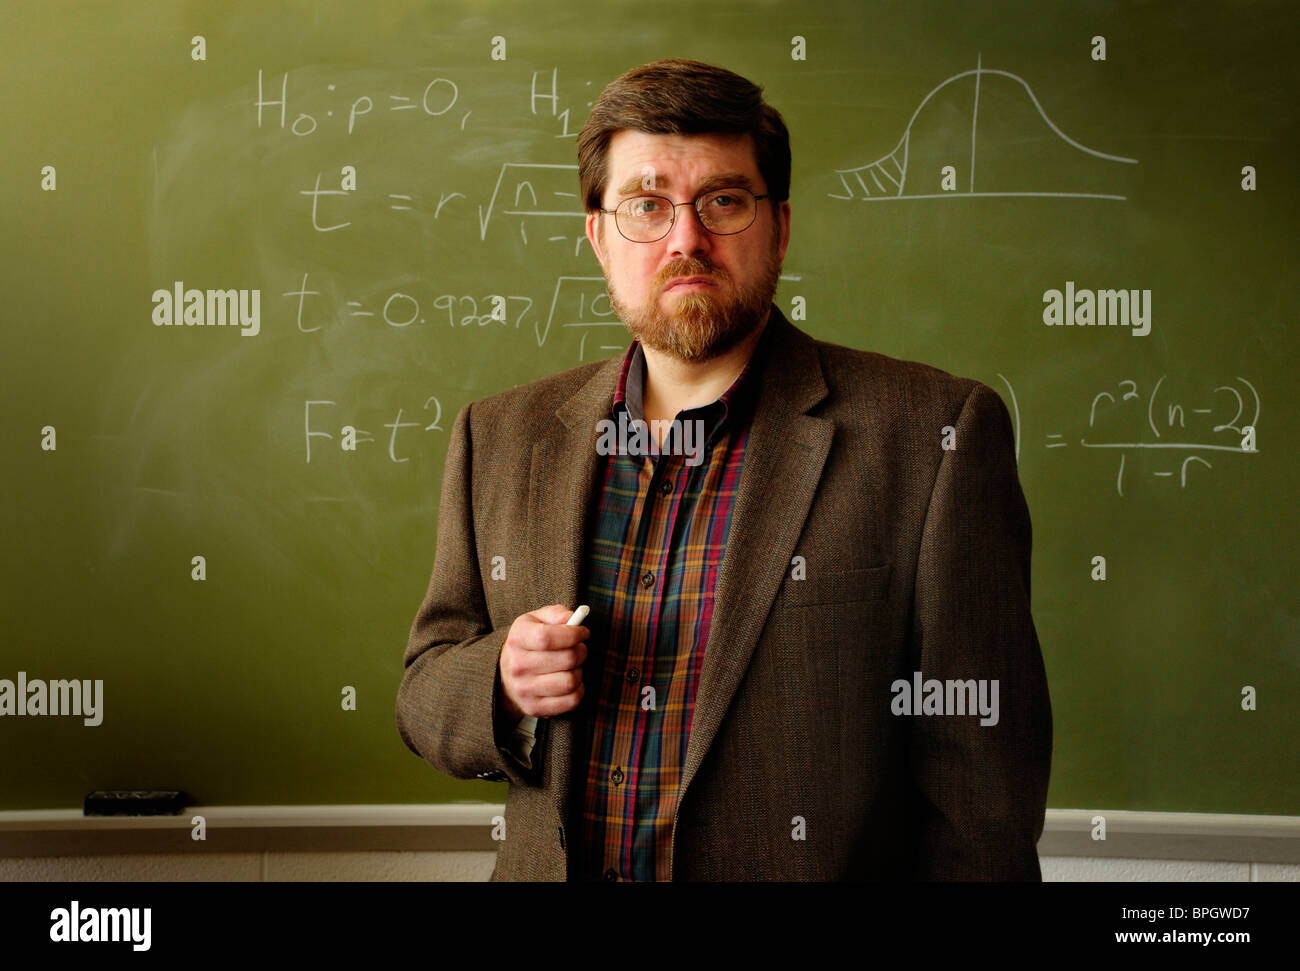 Profesor de matemáticas o maestro de pie en un aula, fórmula estadística sobre pizarra verde en el fondo. Foto de stock